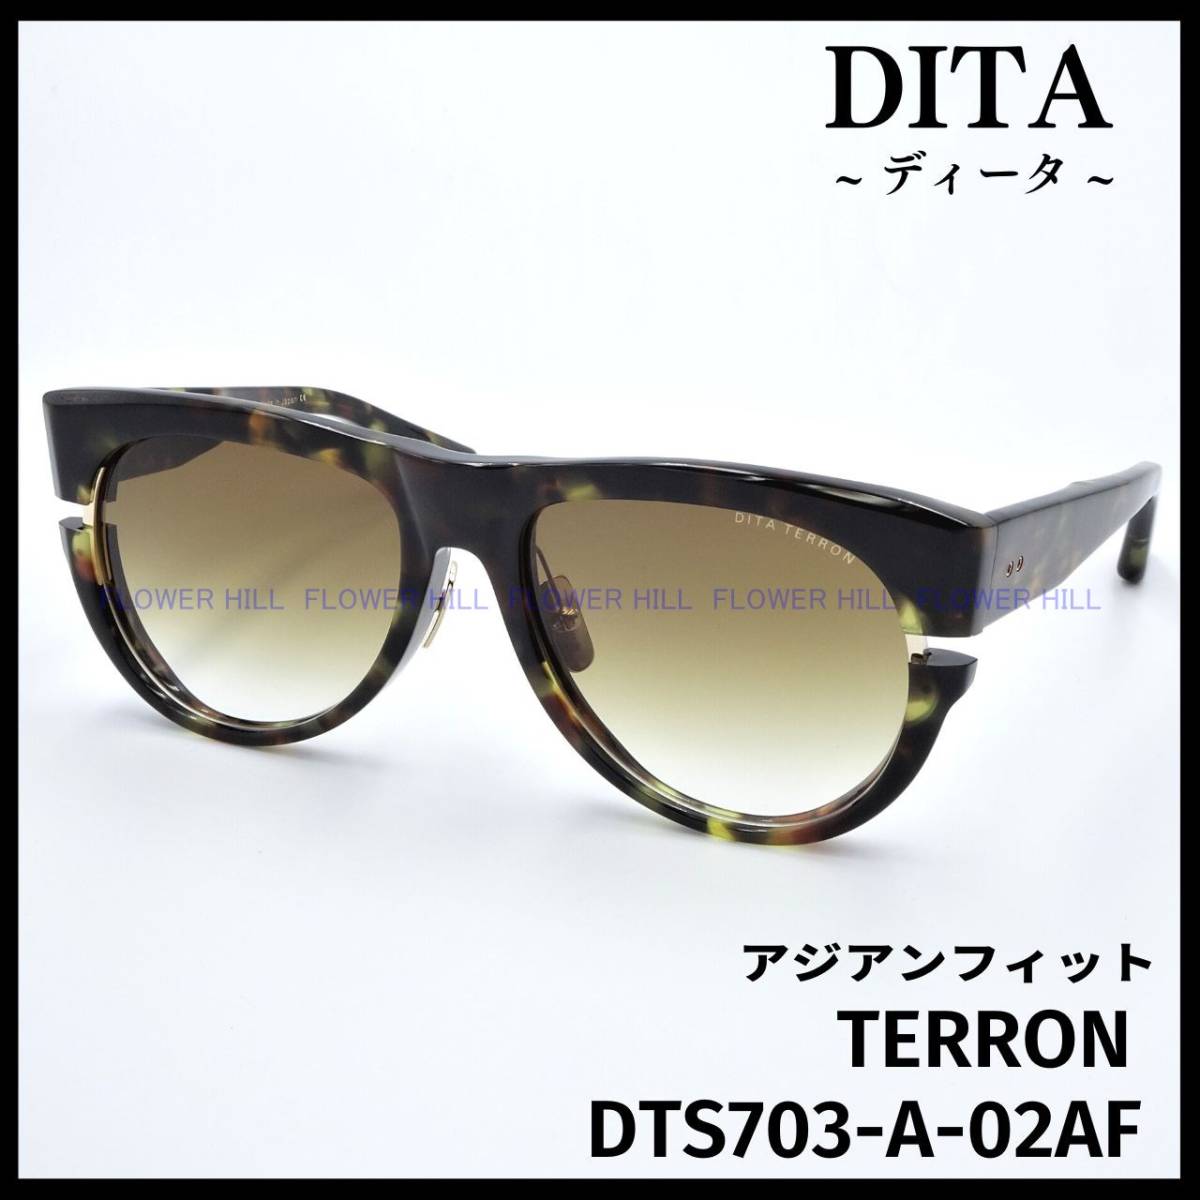 【新品・送料無料】 DITA ディータ サングラス TERRON DTS703-A-02AF ハバナ/ゴールド 日本製 高級 メンズ レディース